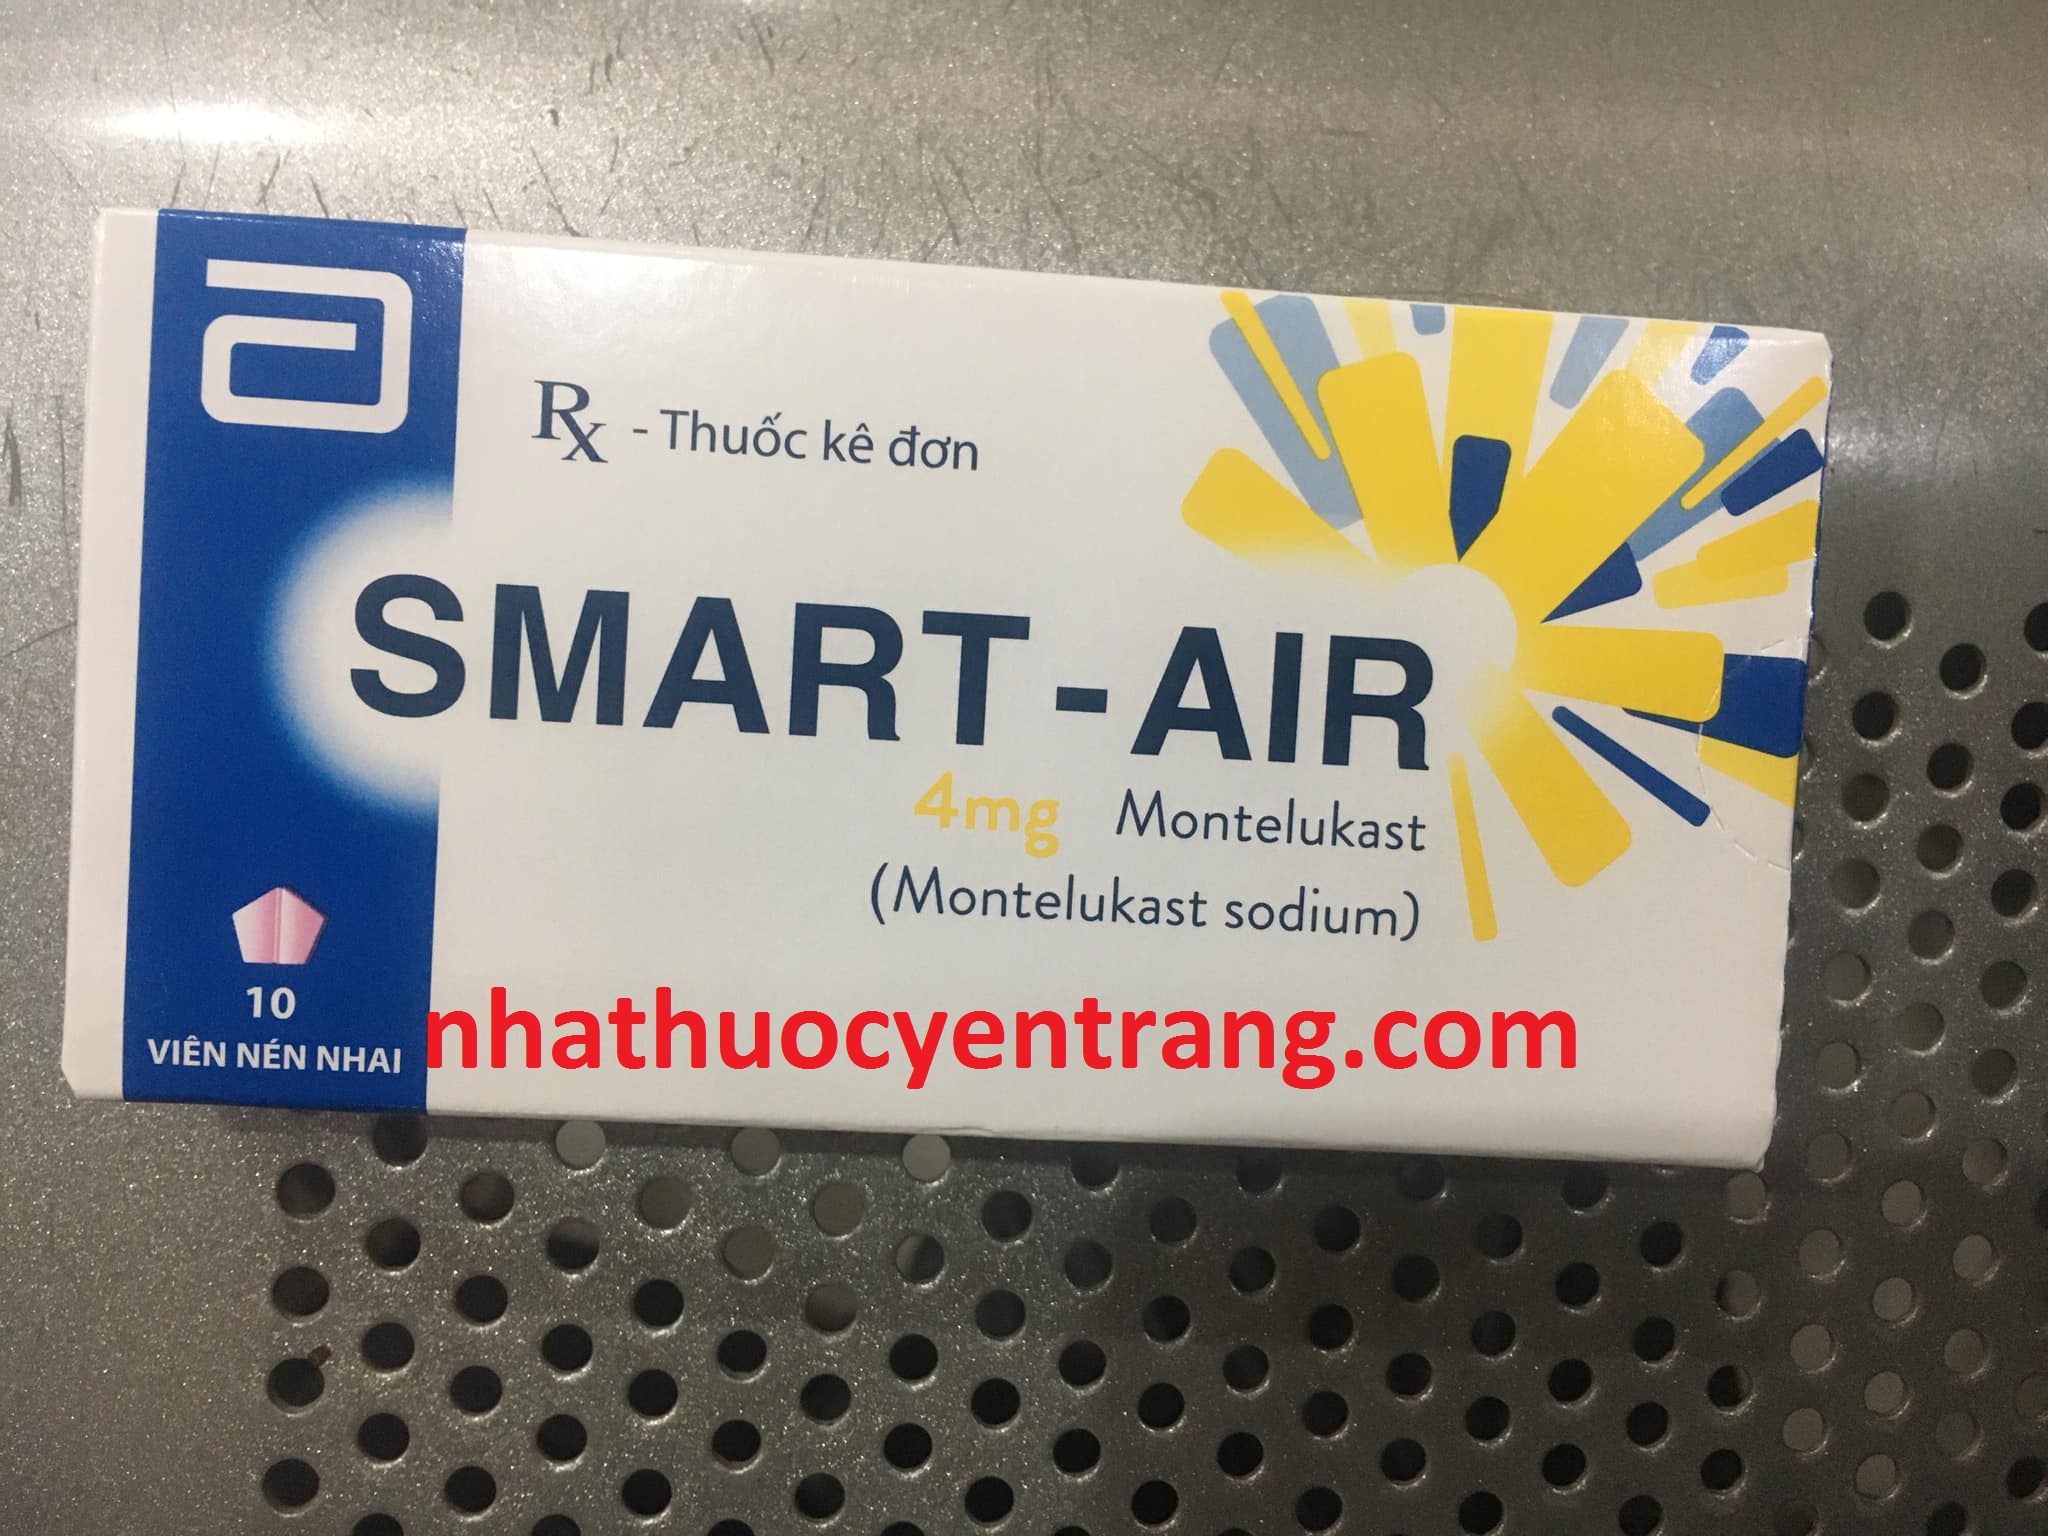 Smart - Air 4mg